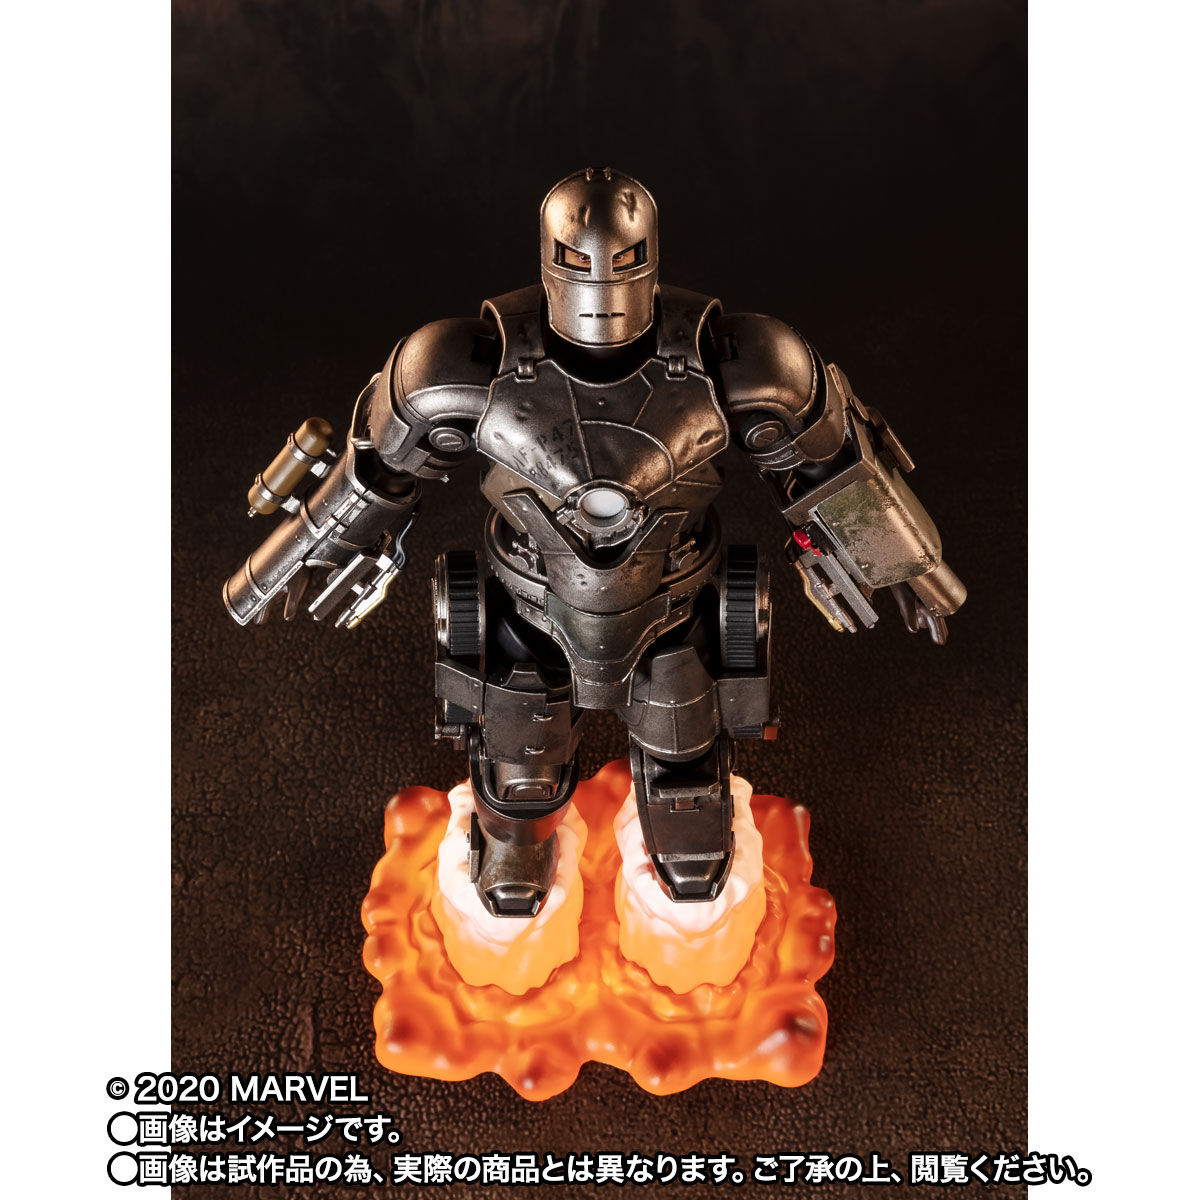 【限定販売】S.H.Figuarts『アイアンマン マーク1《Birth of Iron Man》EDITION』アイアンマン 可動フィギュア-005